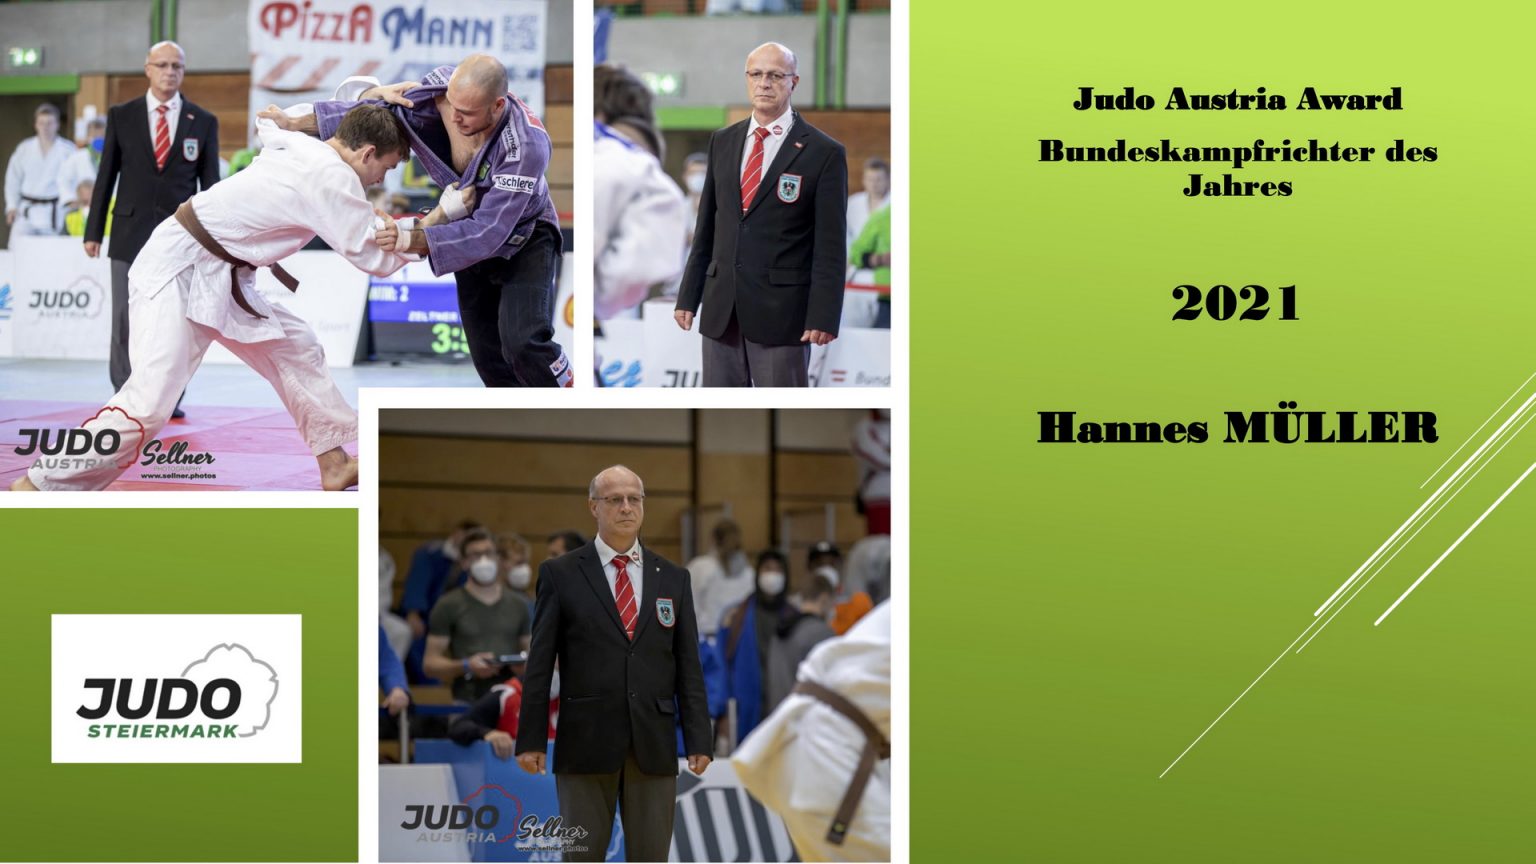 Judo Austria Award für Hannes Müller.